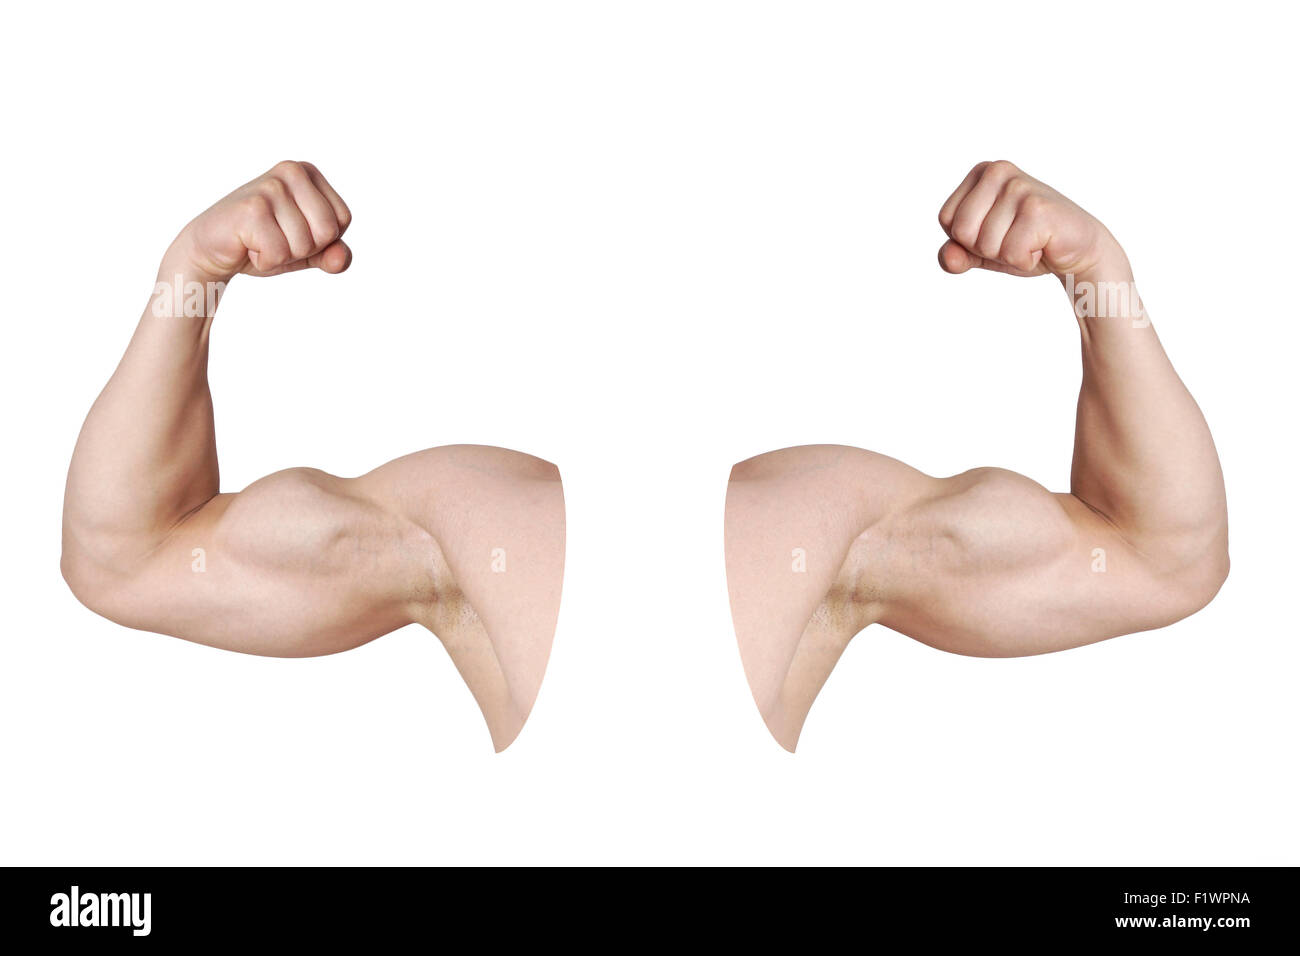 Macho con los músculos bíceps de los brazos flexionados Foto de stock